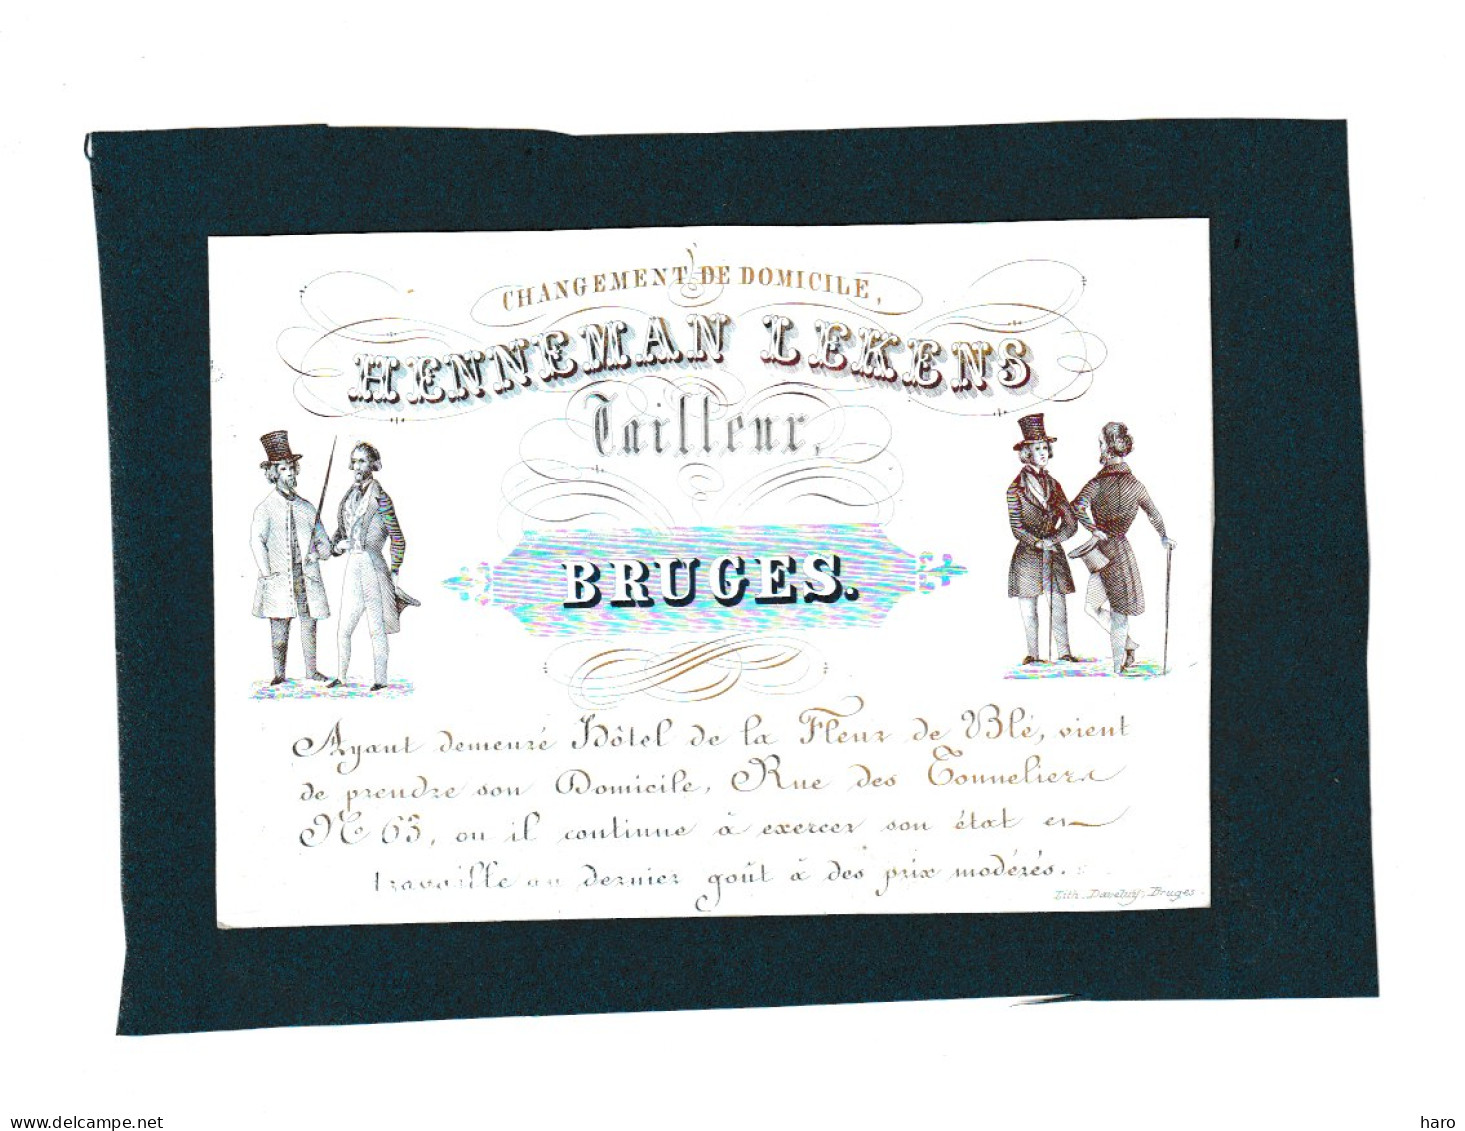 BRUGGE /BRUGES  - Carte De Visite Porcelaine - Tailleur HENNEMAN LEKENS   +/- 1840...50 - (Mi 13) - Visitenkarten